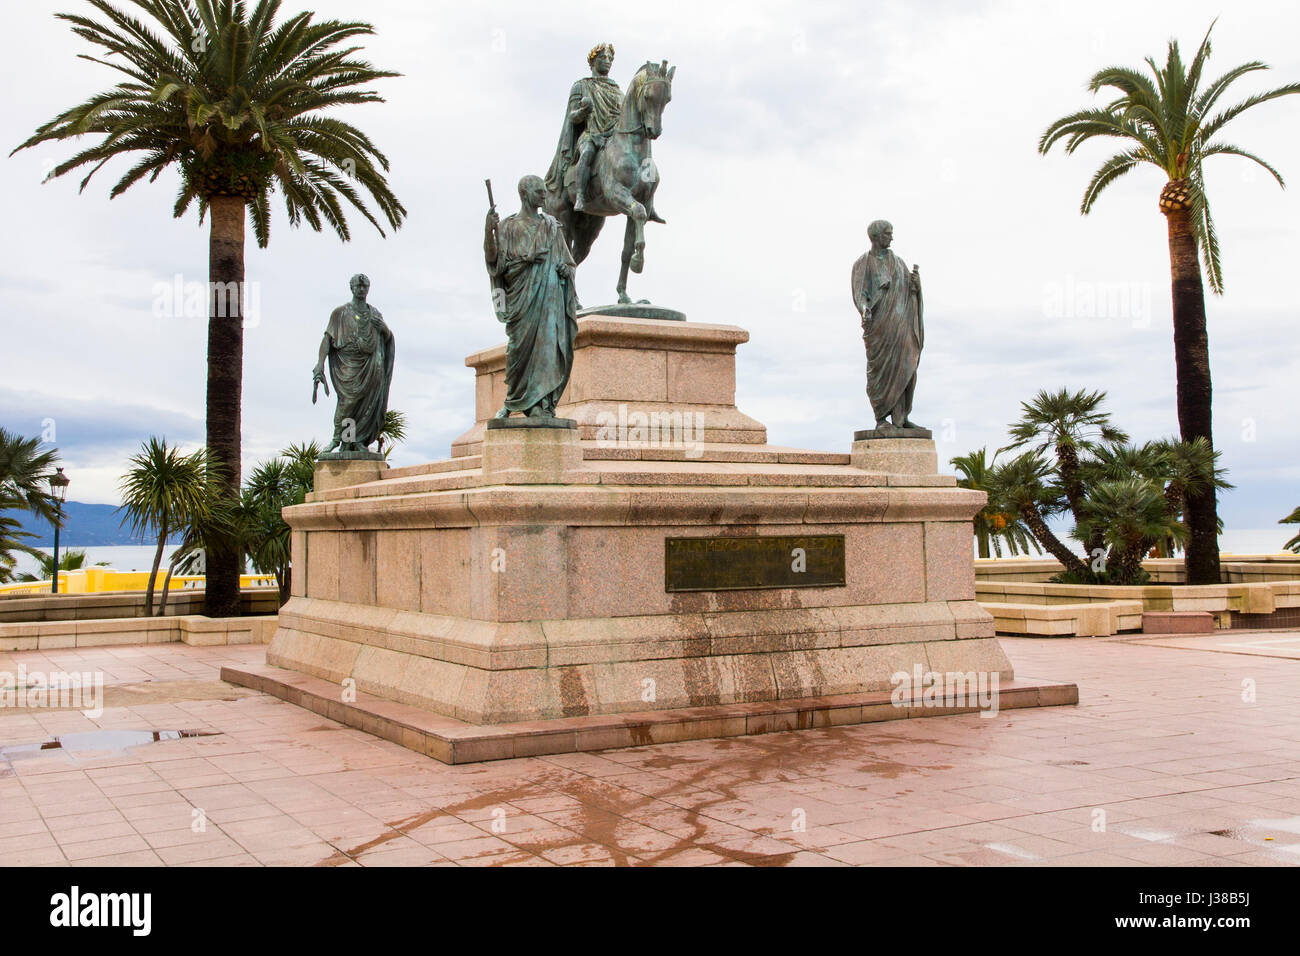 Von Korsika eingeborener Sohn Napoleon Bonaparte ist memorialized mit vielen Monumenten in Ajaccio, einschließlich dieses Reiterstandbild in Place de Gaulle, Ajaccio. Stockfoto